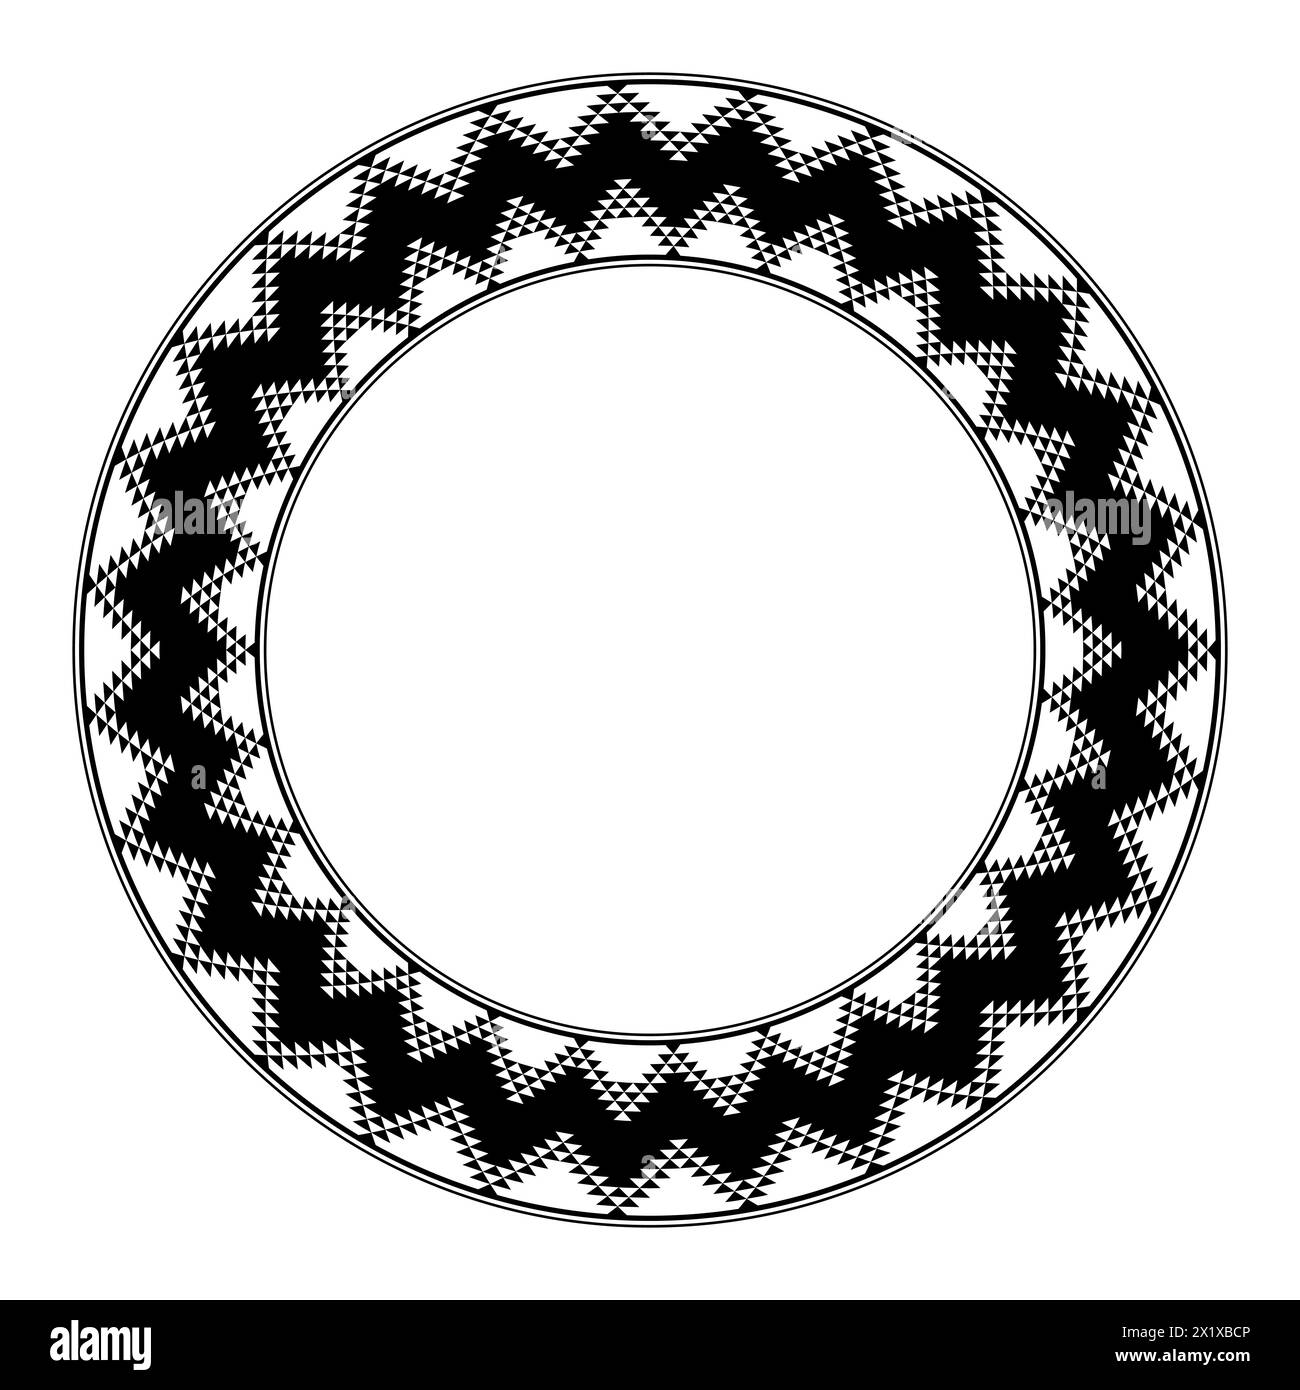 Motif Anasazi, cadre circulaire. Bordure décorative le design typique des Puebloans ancestraux, une culture amérindienne. Banque D'Images